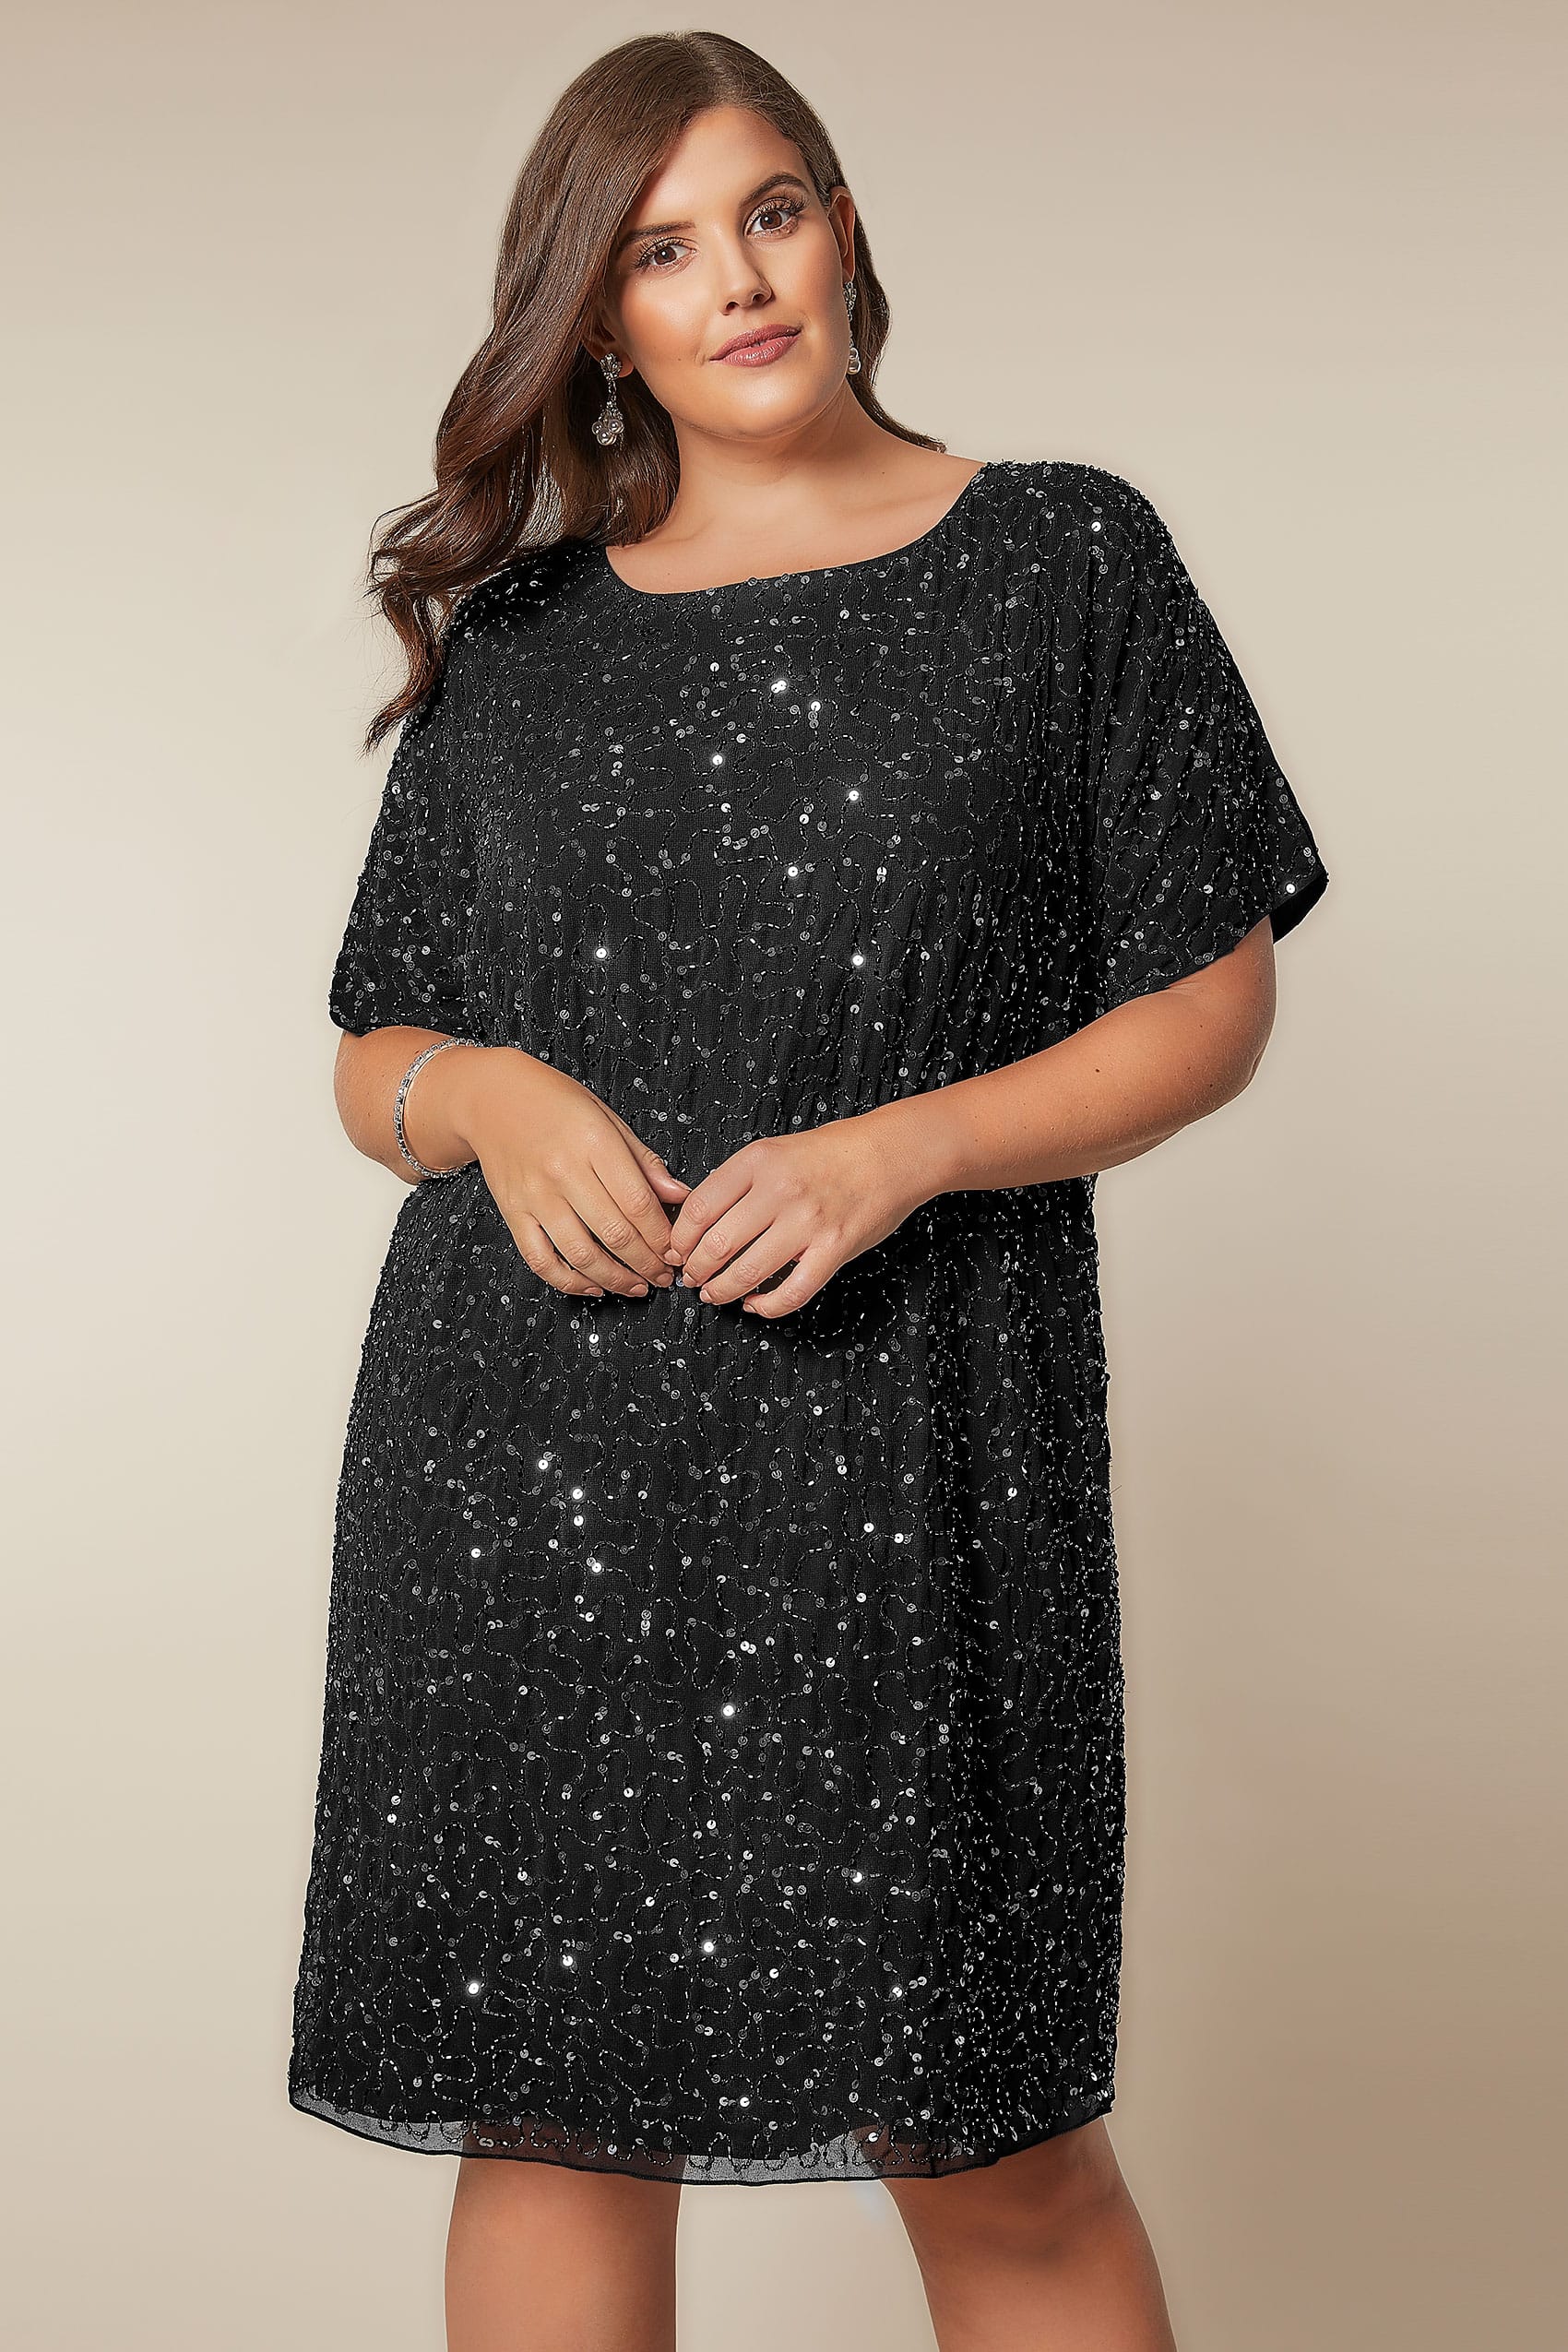 LUXE Black Sequin Cold Shoulder Cape Dress, plus size 16 to 32